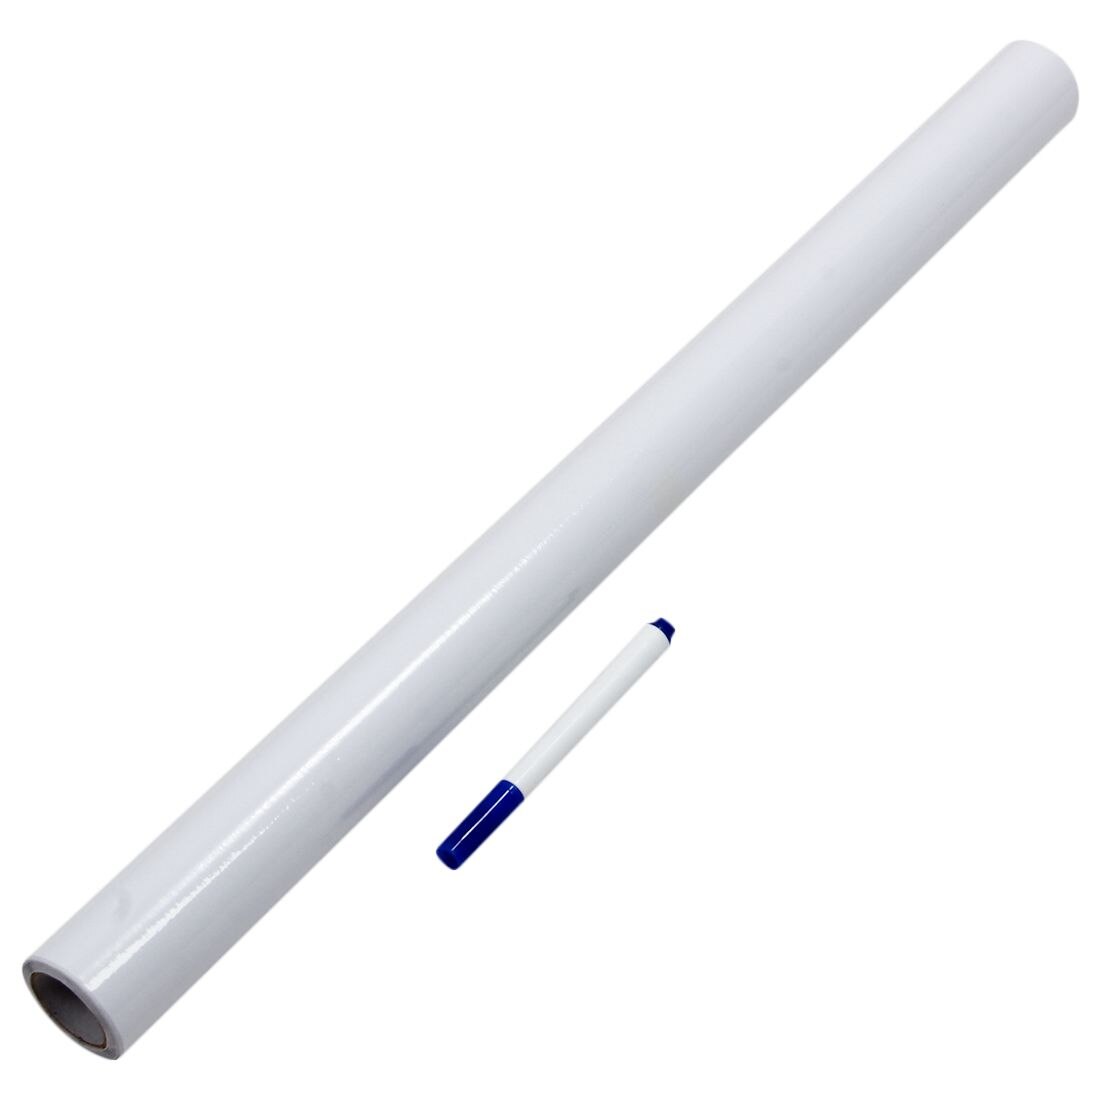 2 STUKS van Peel en Stick Whiteboard PVC Krijtbord Muursticker Gratis Marker Pen 45 cm x 200 cm/ stuk Geweldig voor Kinderkamer B17